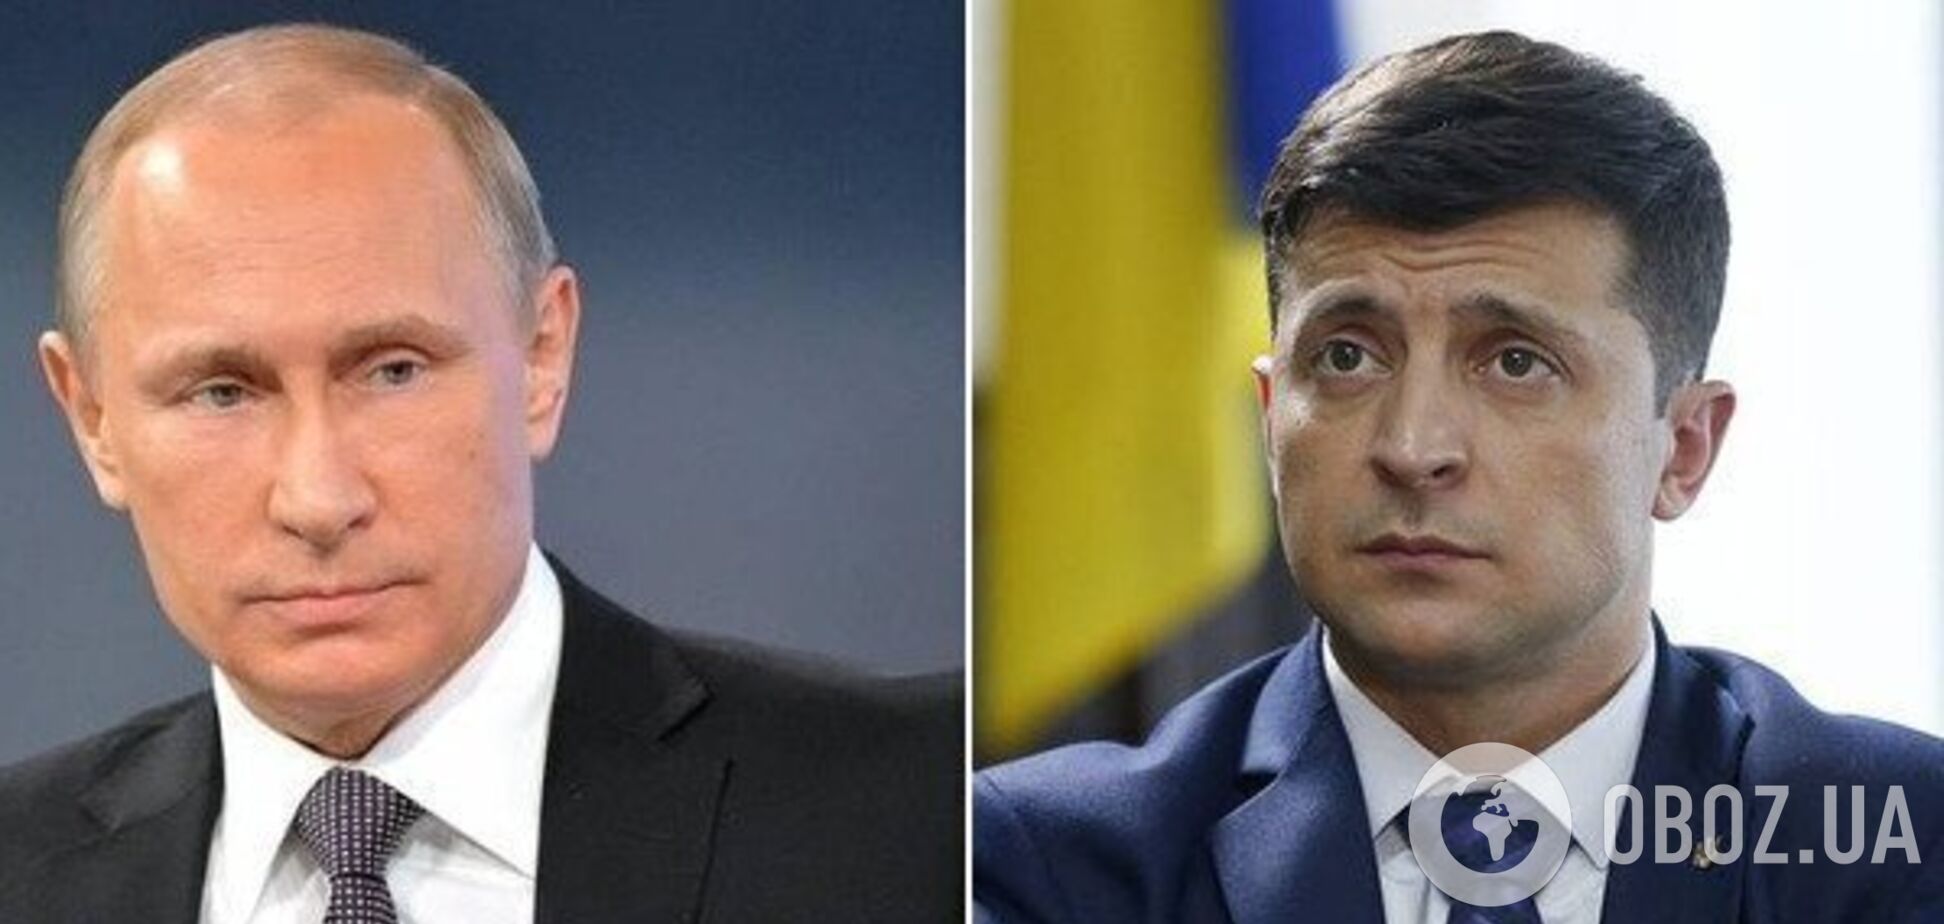   Путин выдвинул условия и ждет: Зеленскому указали на тревожный сигнал на Донбассе